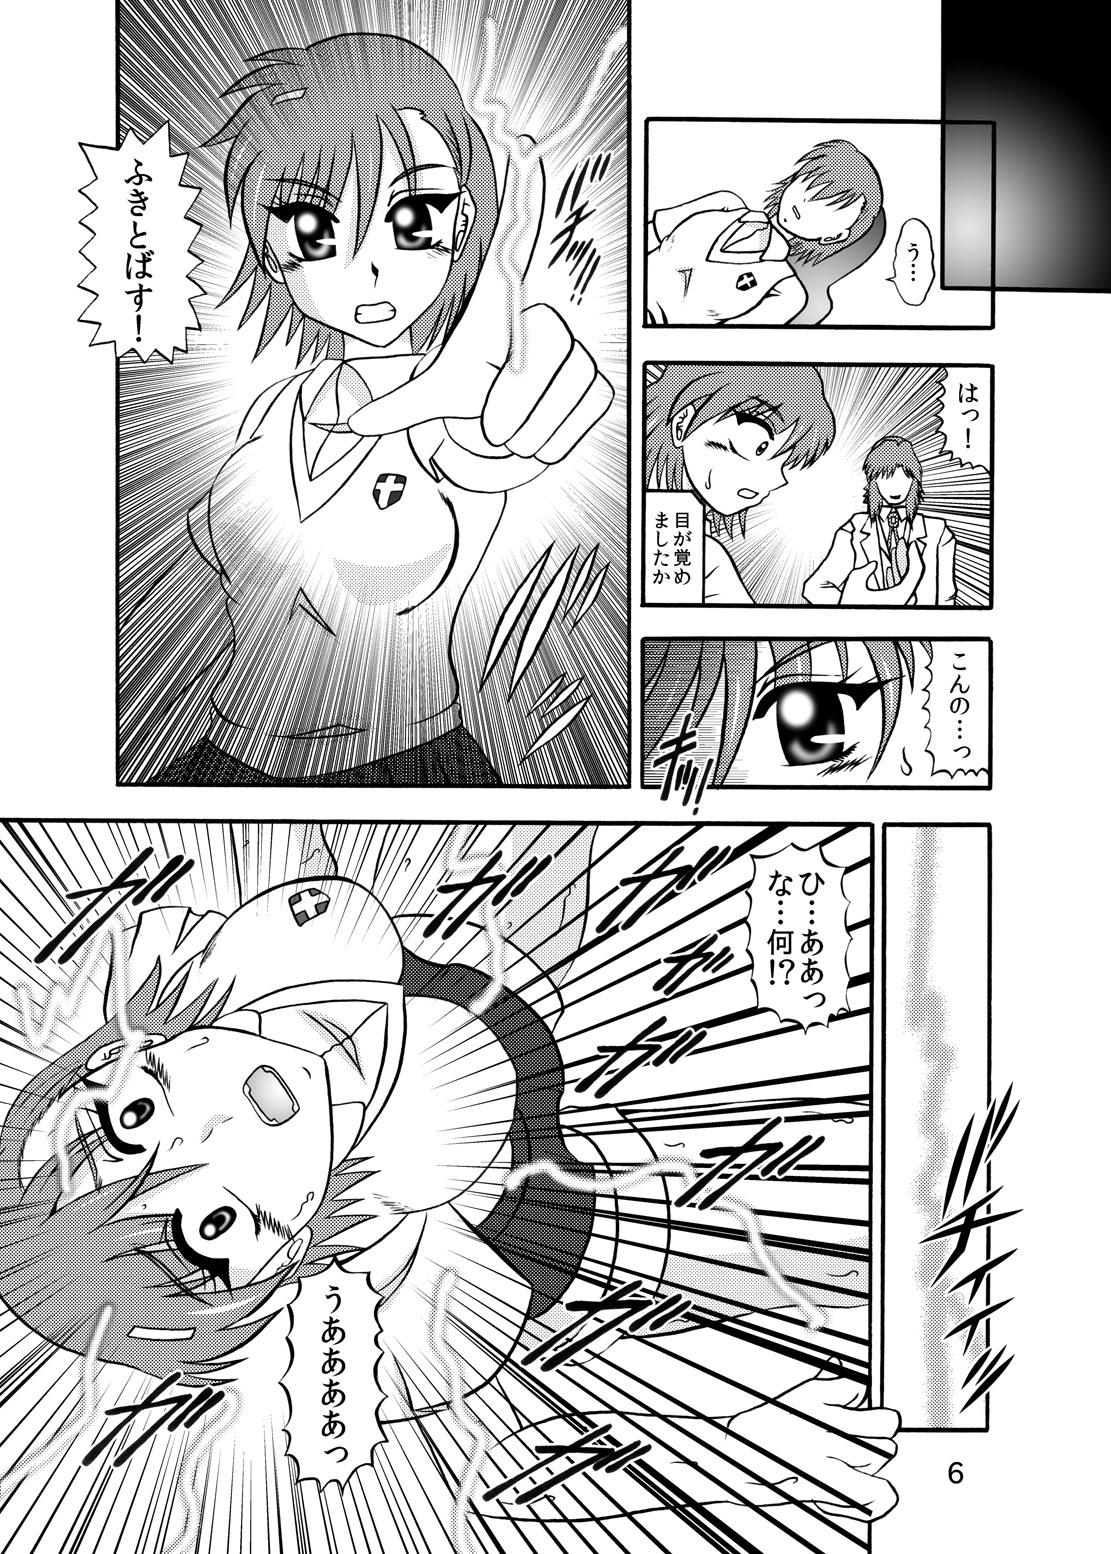 Rabo Inyoku Kaizou: Misaka Mikoto - Toaru kagaku no railgun Nylons - Page 4